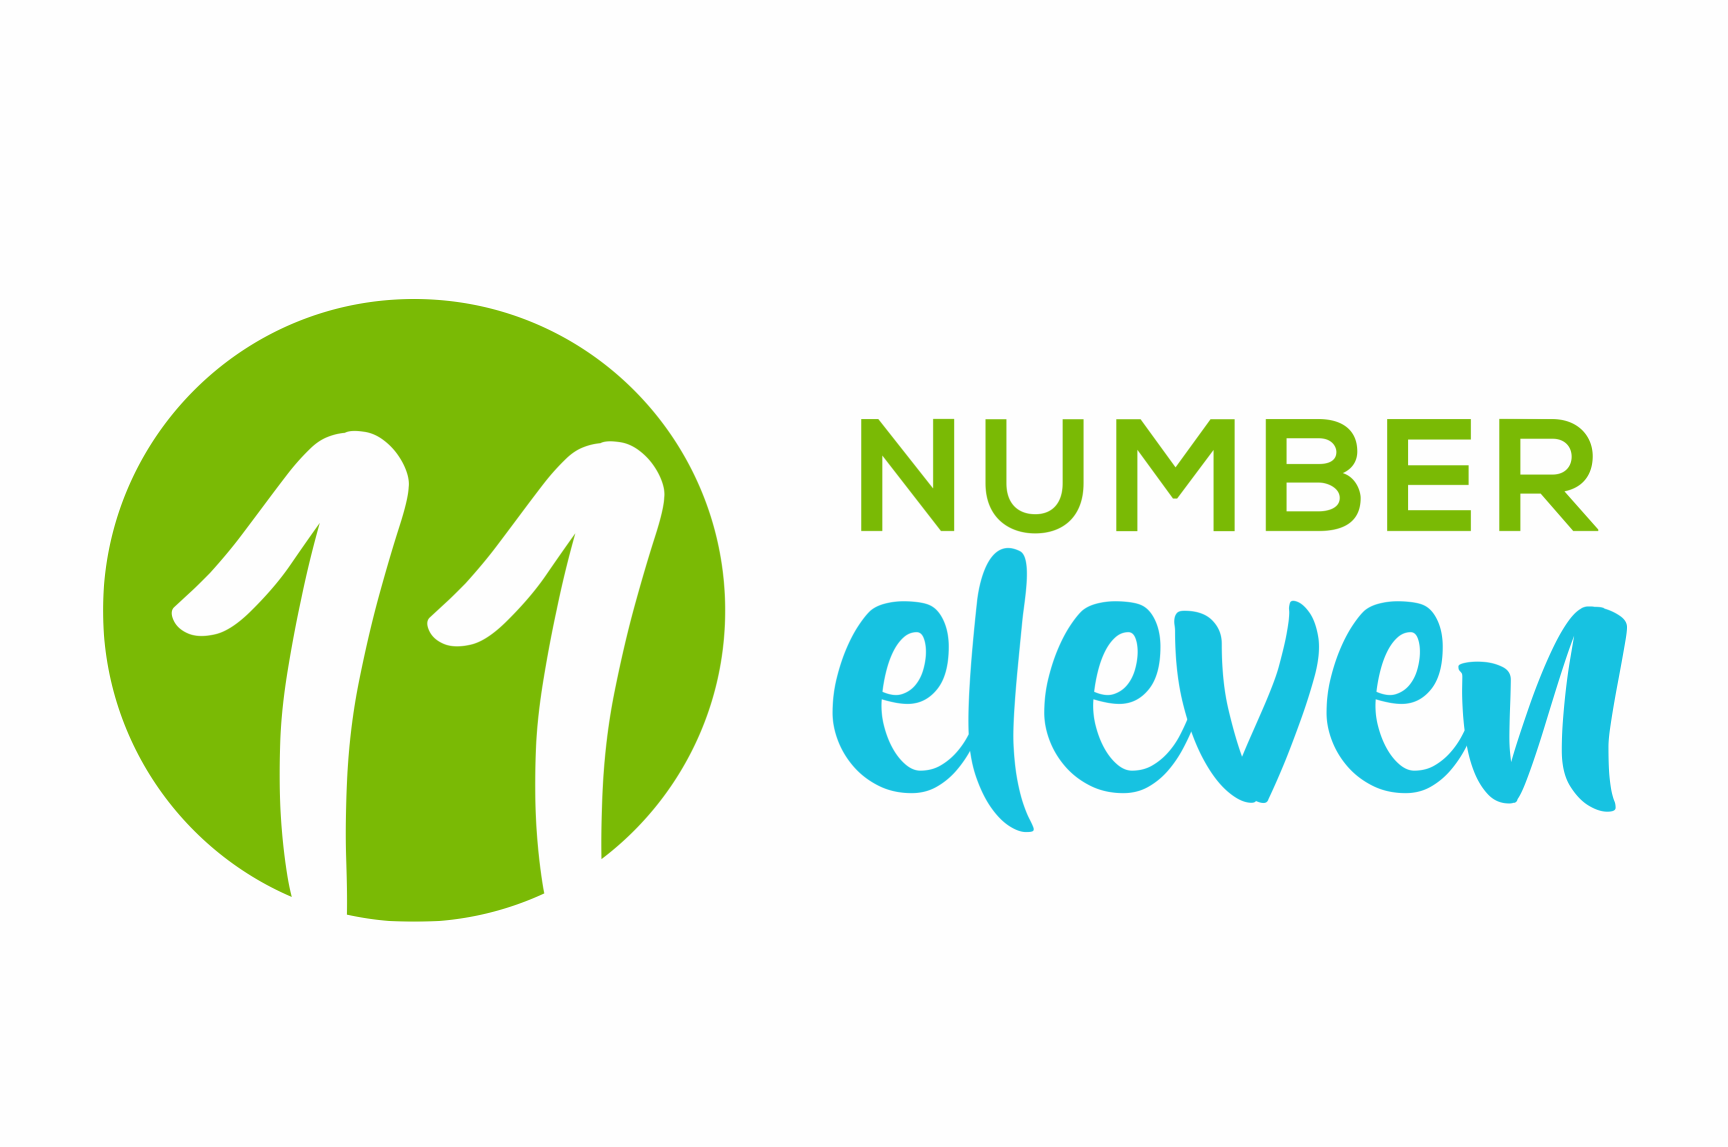 number eleven logo